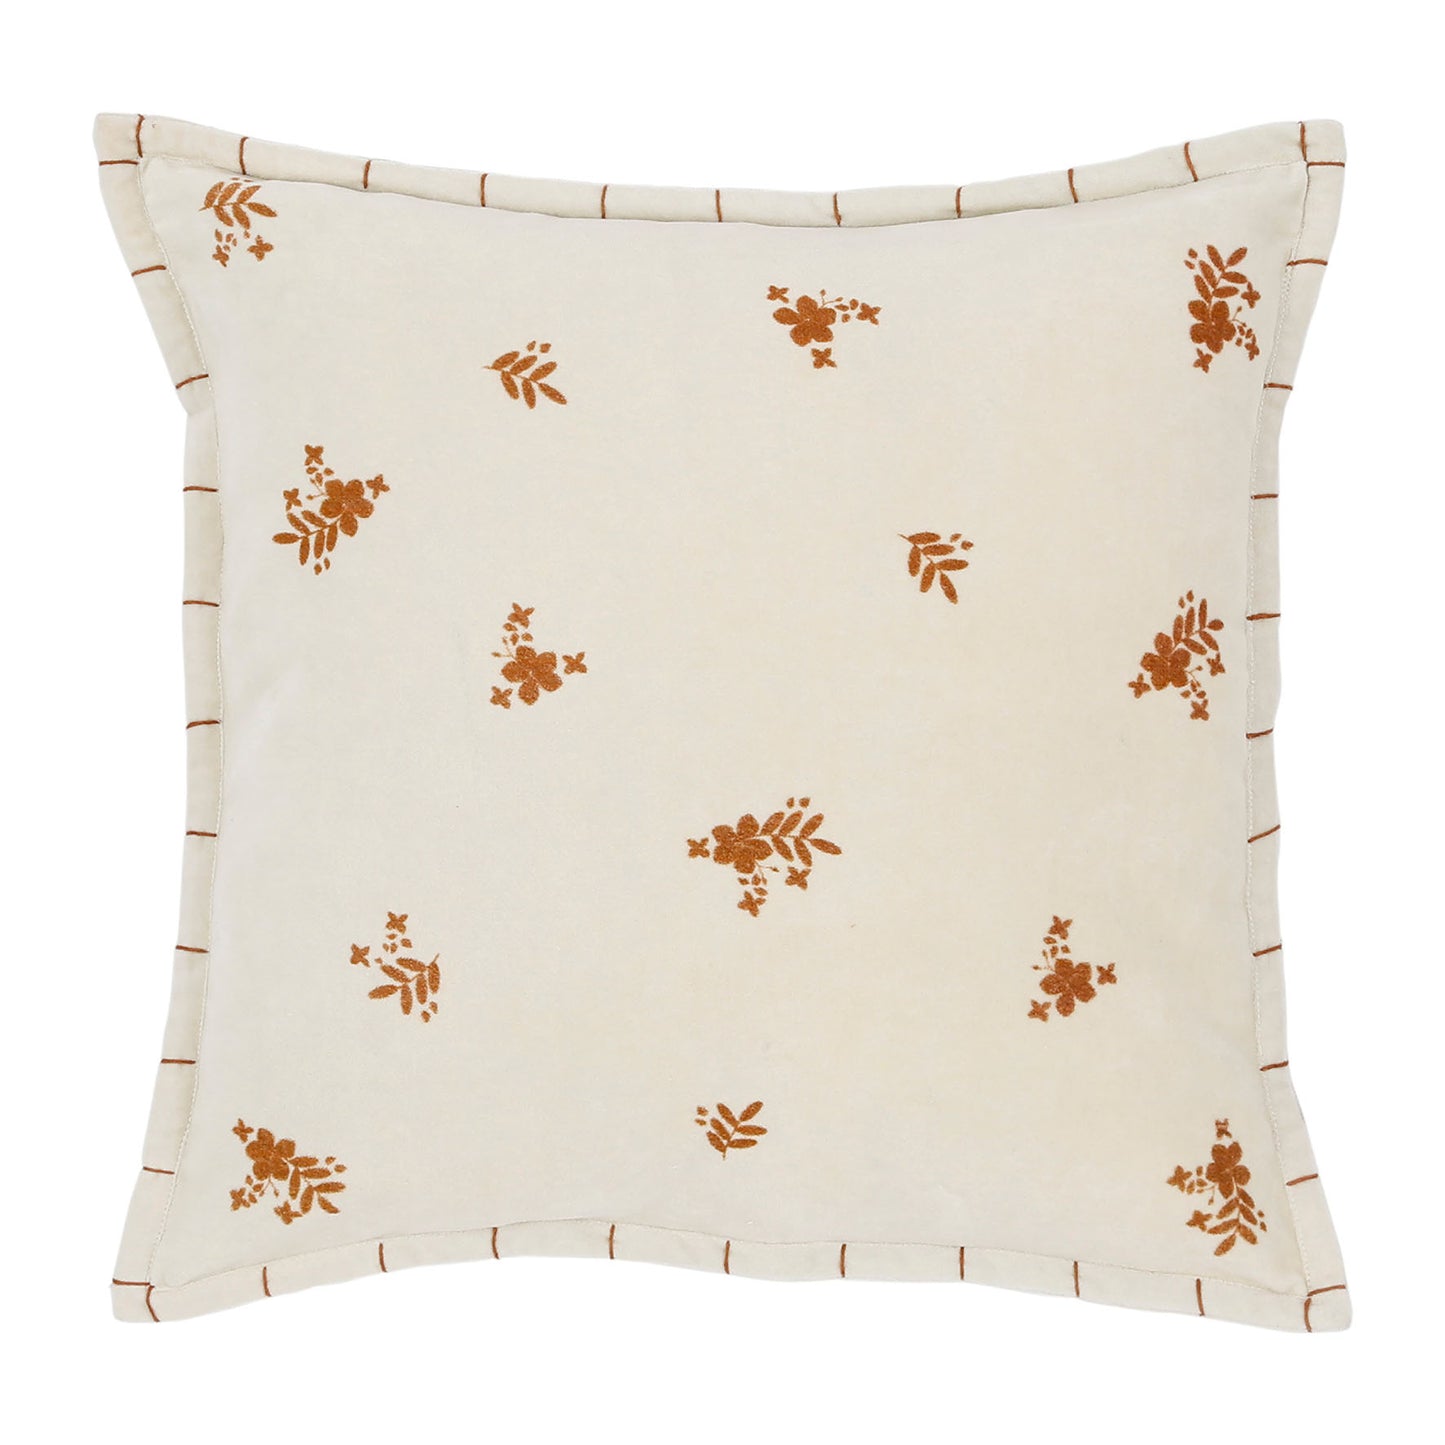 Velvet ivory & terracotta floral cushion, 45x45